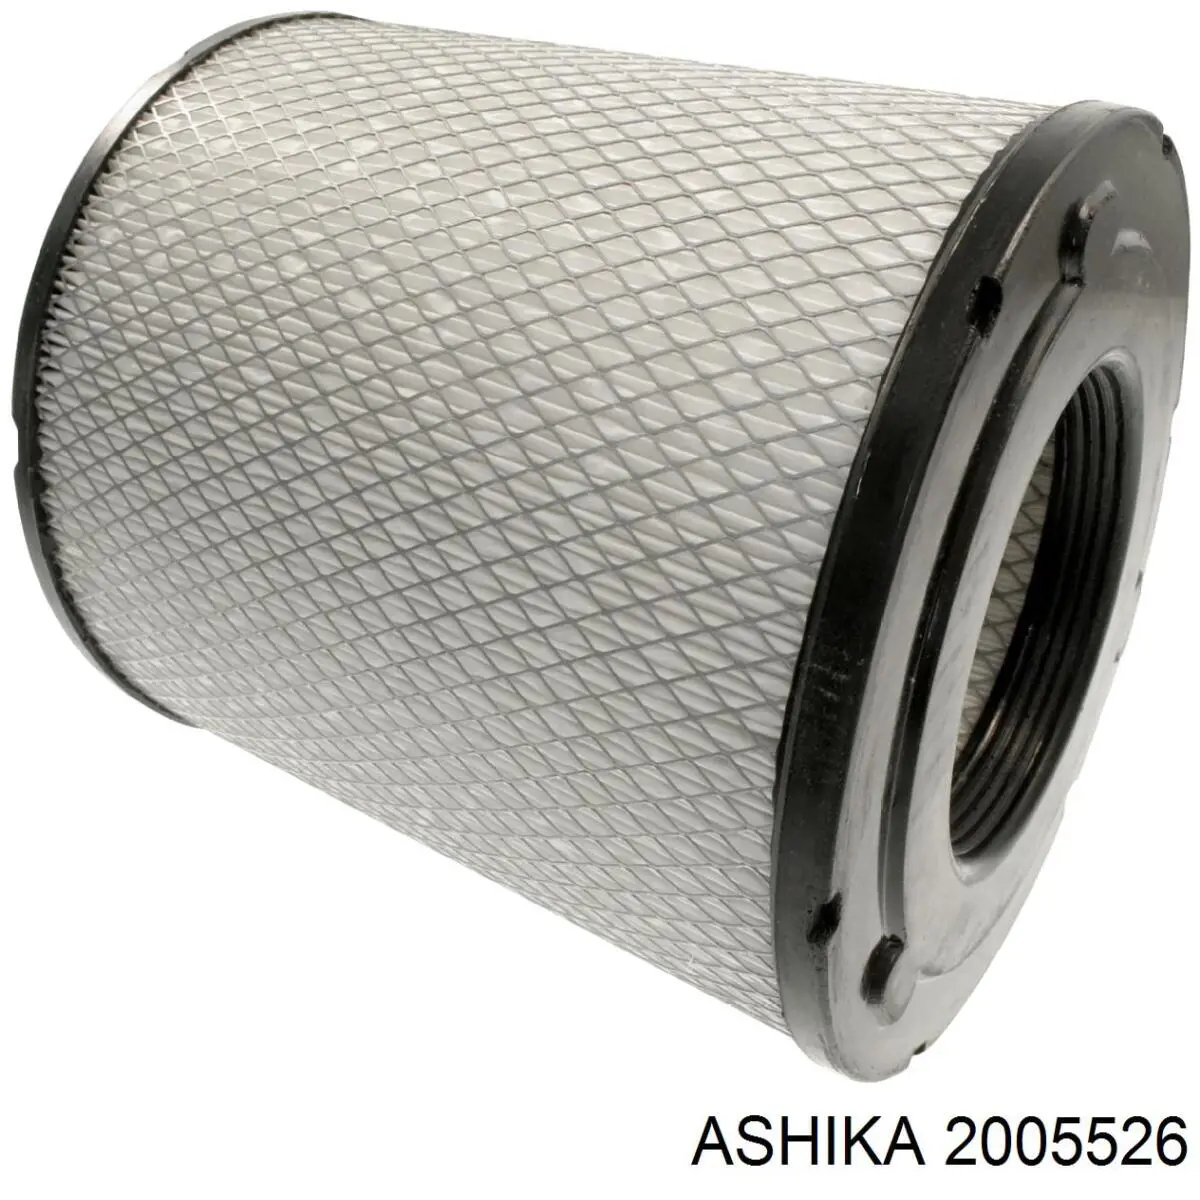 2005526 Ashika filtro de aire